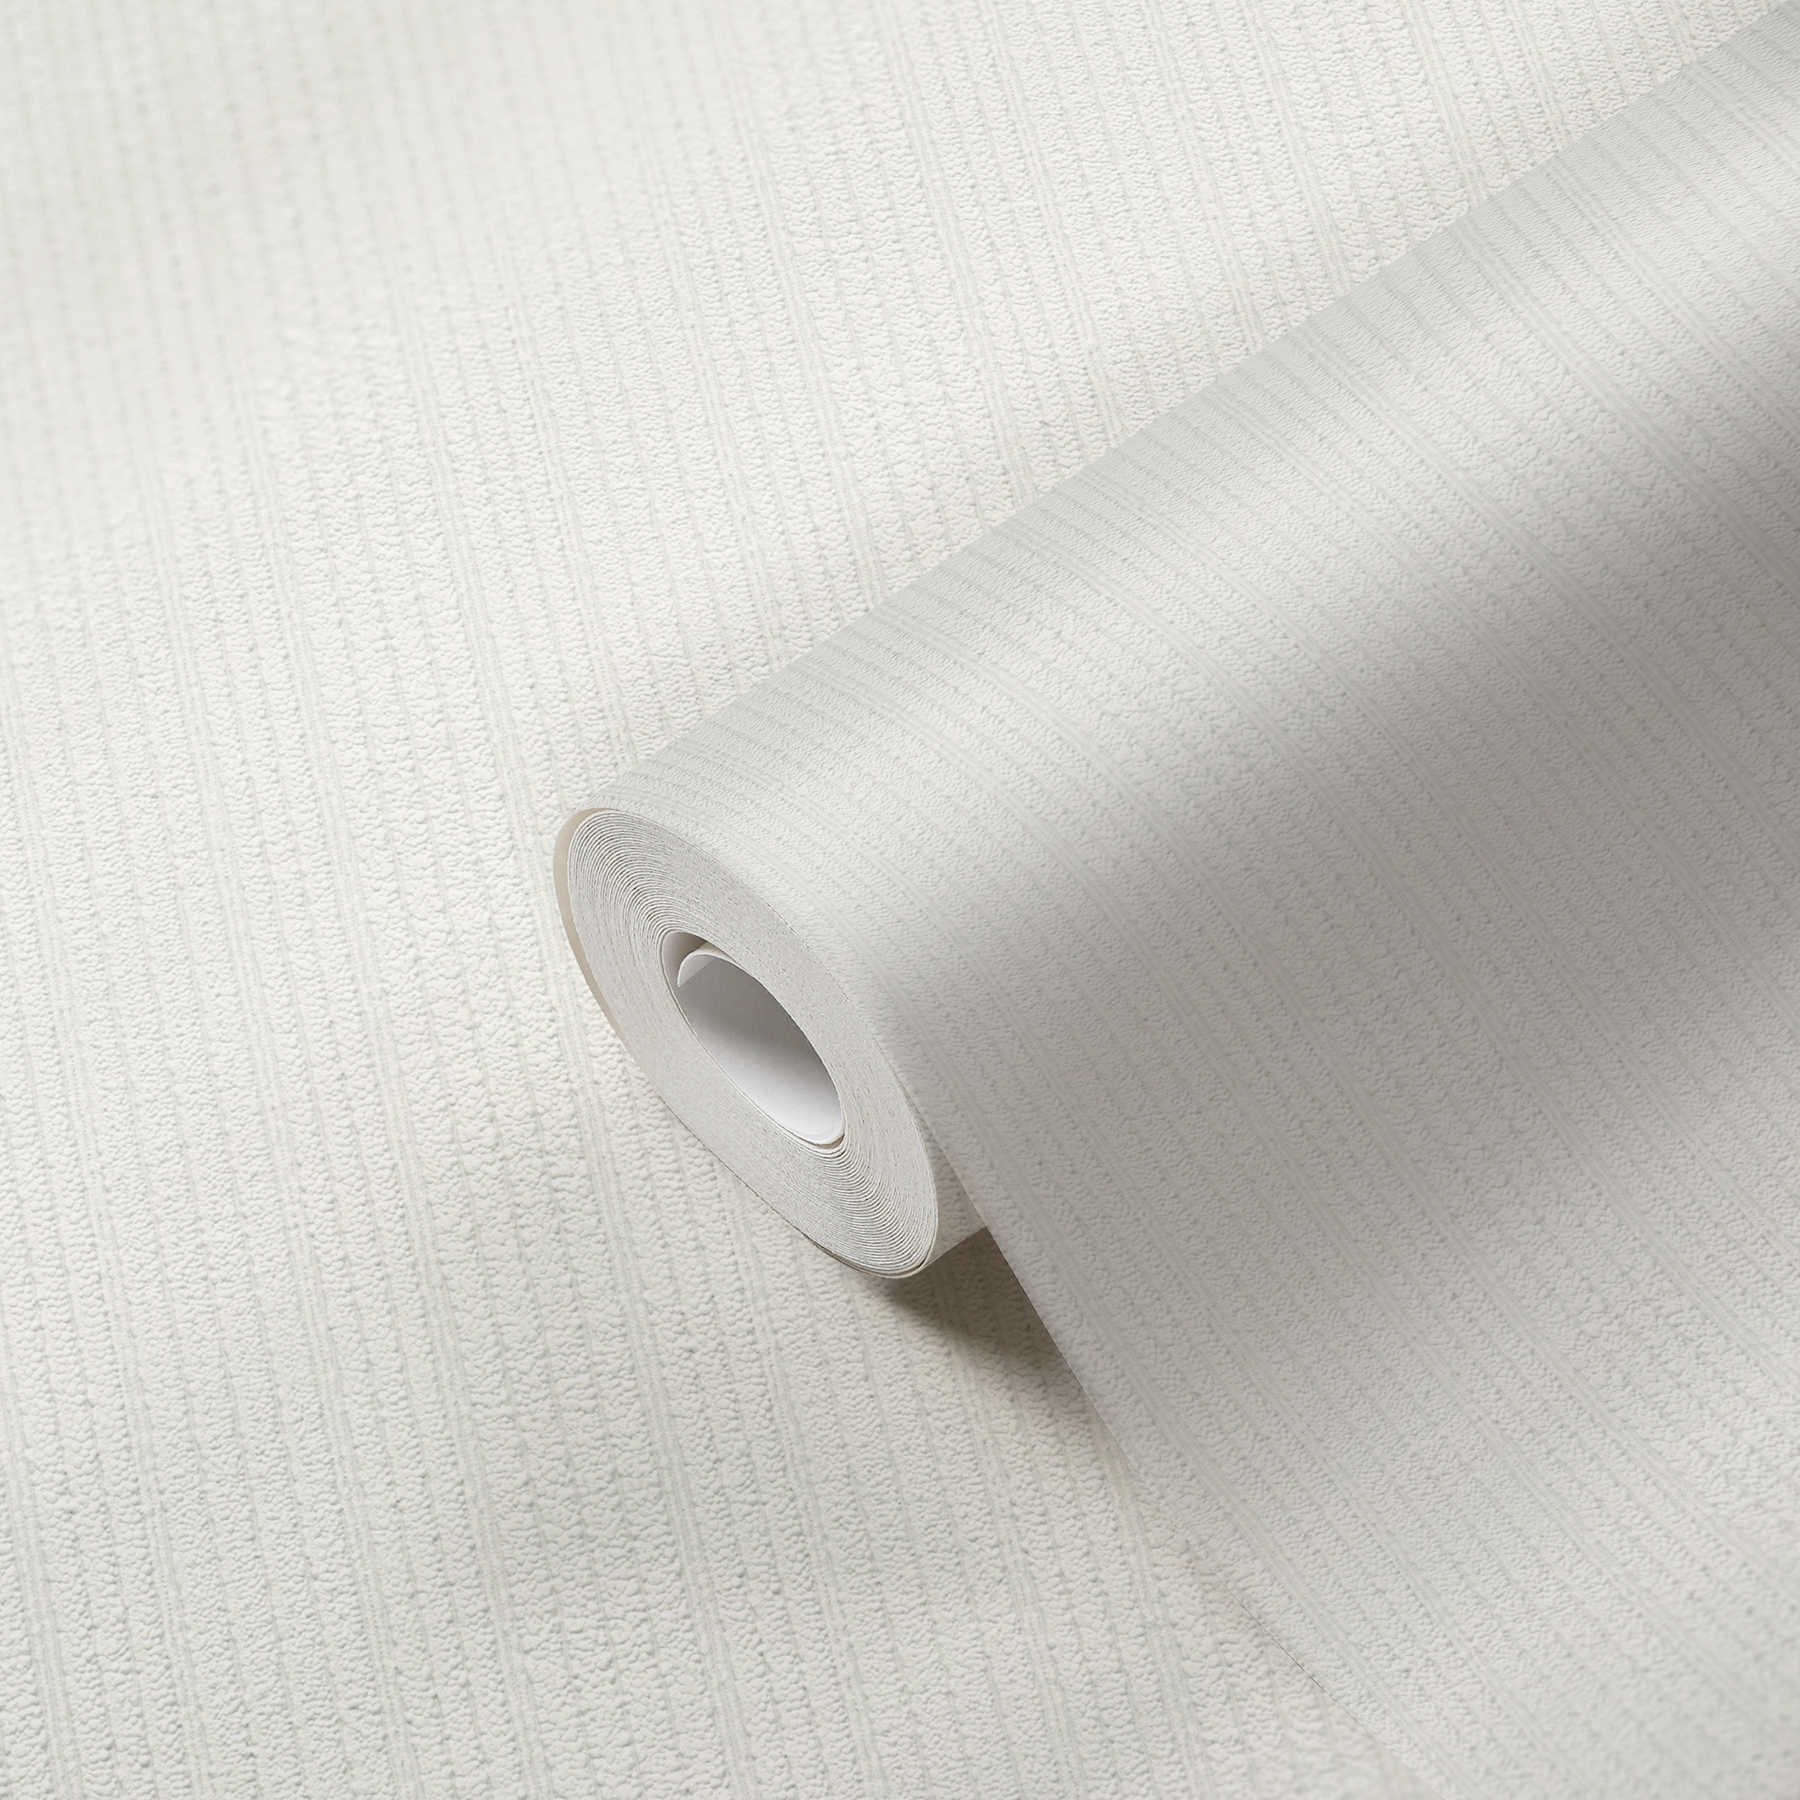             Wit behang met structuurstrepen - wit
        